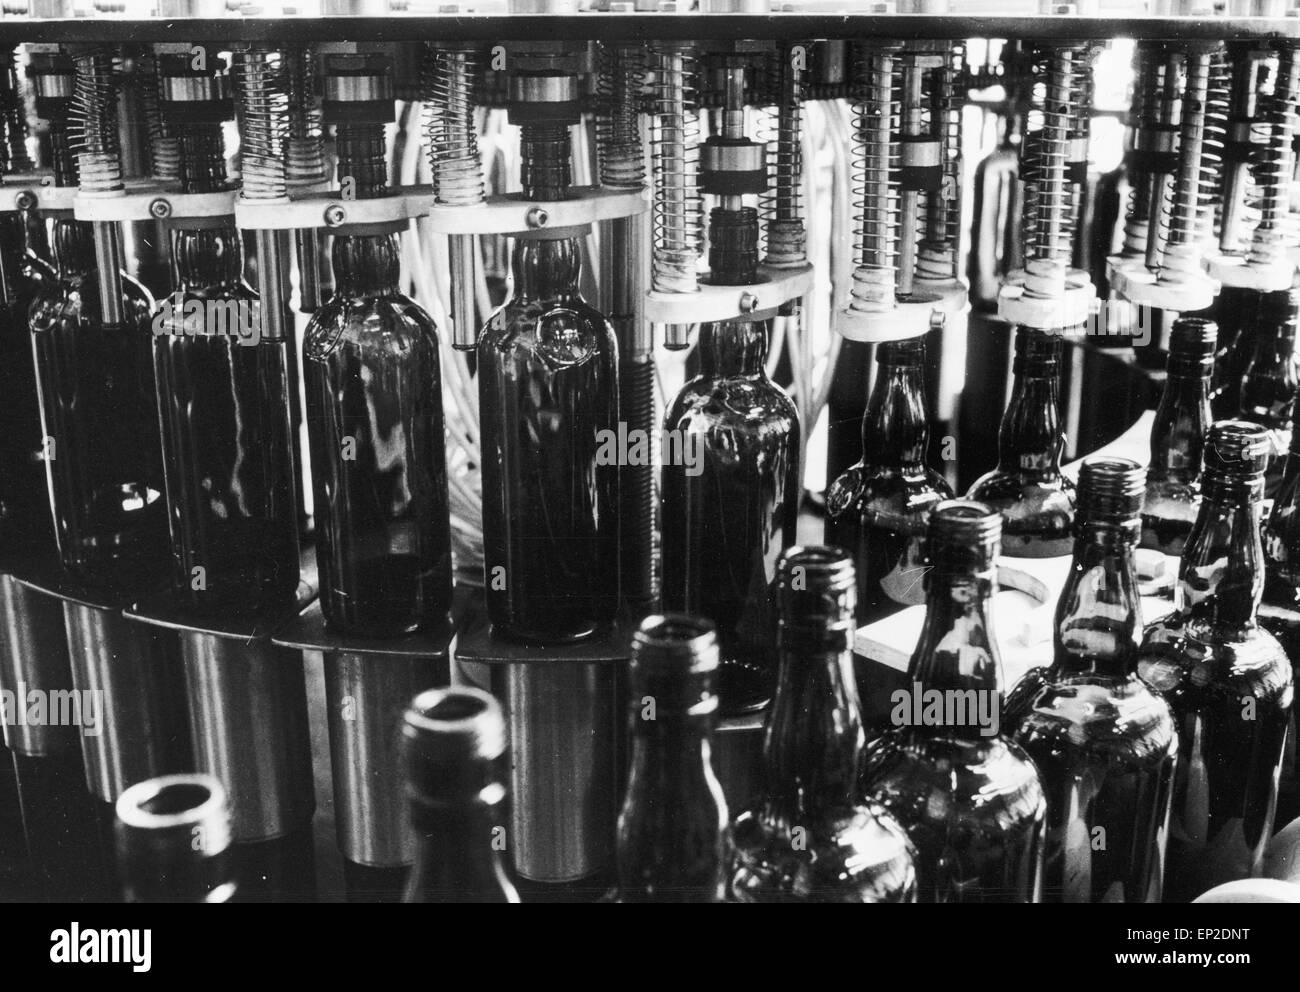 Der Real Scotch Whisky - eine automatische Abfüllmaschine an der Abfüllanlage. Es gibt sechs dieser Maschinen, von denen jeder 120 Flaschen pro Minute, füllt eine Summe von 1 Million Flaschen in einer 40-Stunden-Woche zu geben. Stockfoto